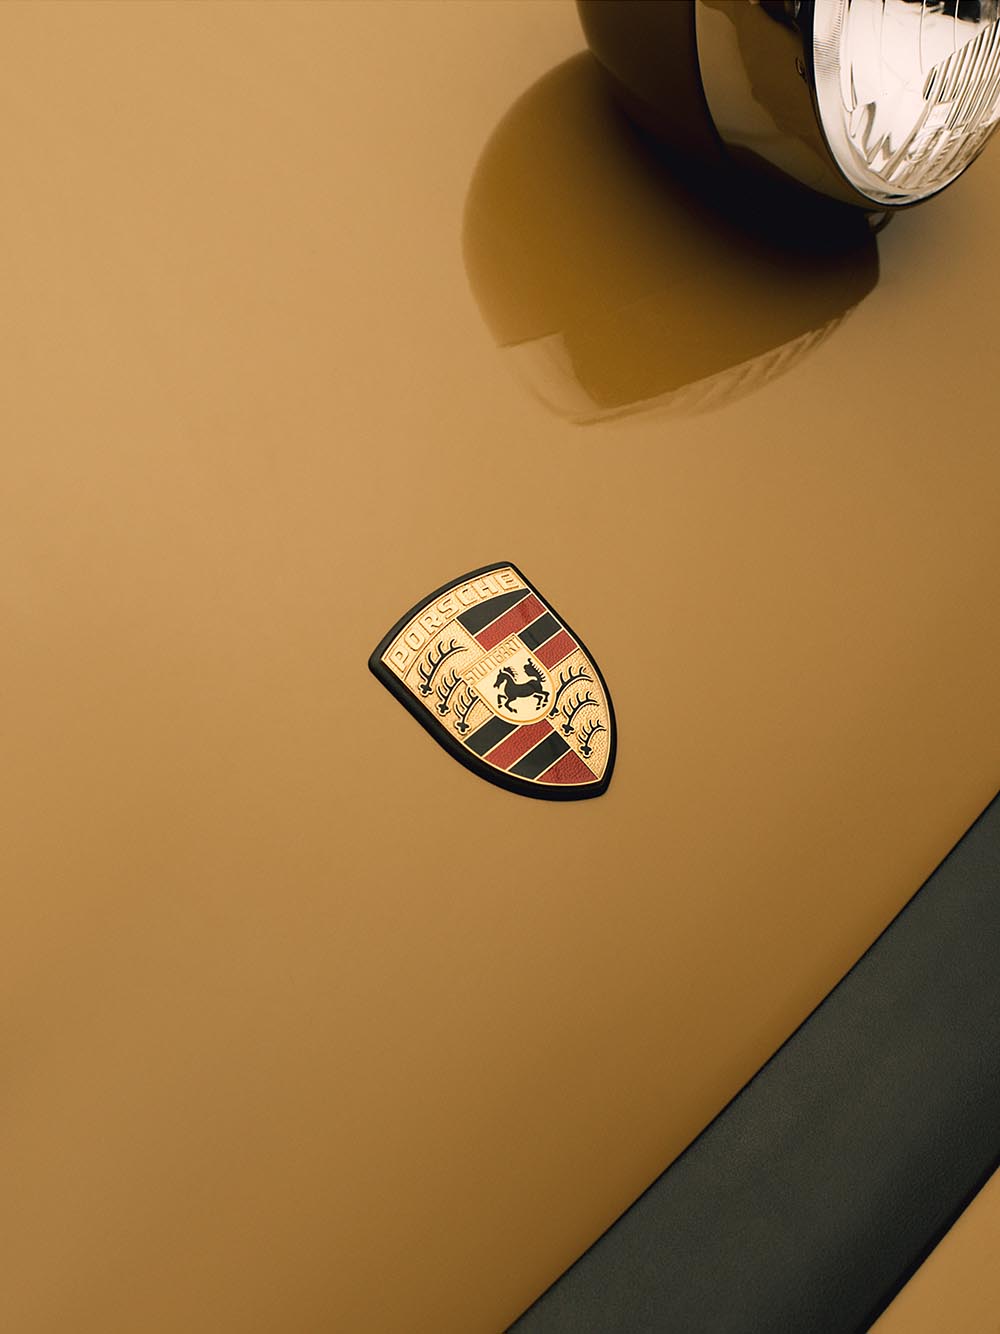 Herausgeputzt: Porsche Emblem. Foto Porsche AG / Aimé Leon Dore